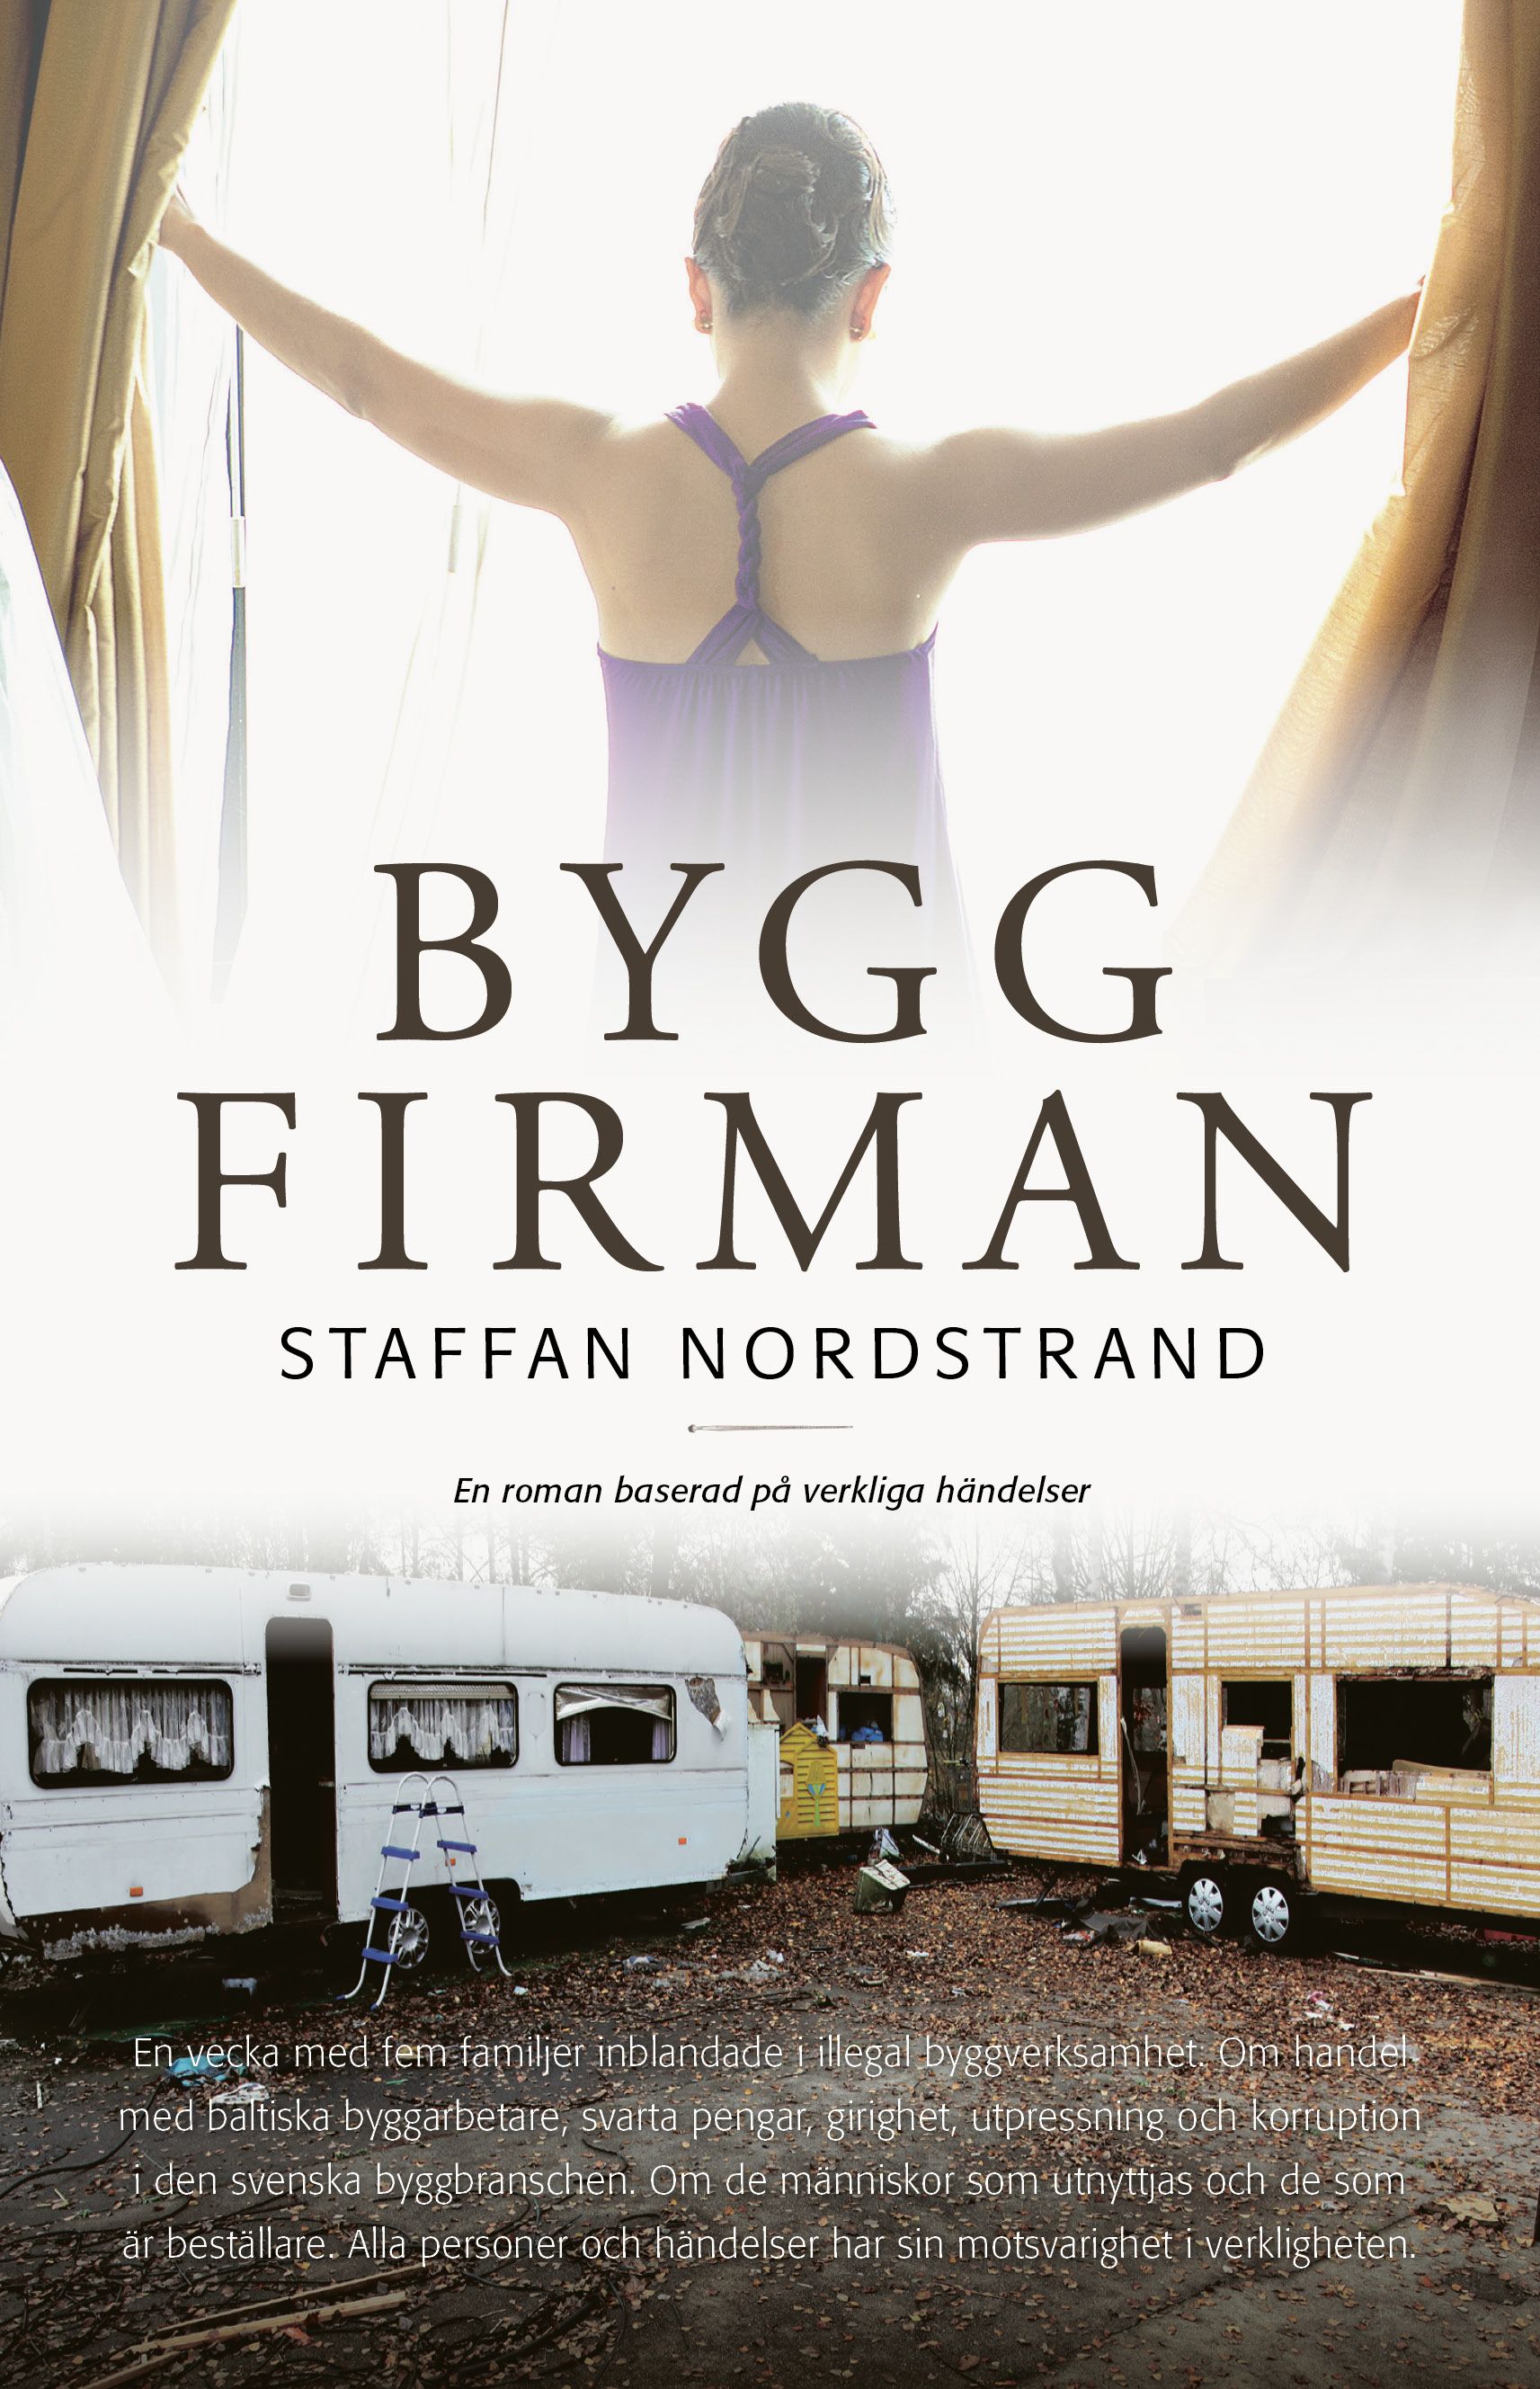 Byggfirman, eBook by Staffan Nordstrand